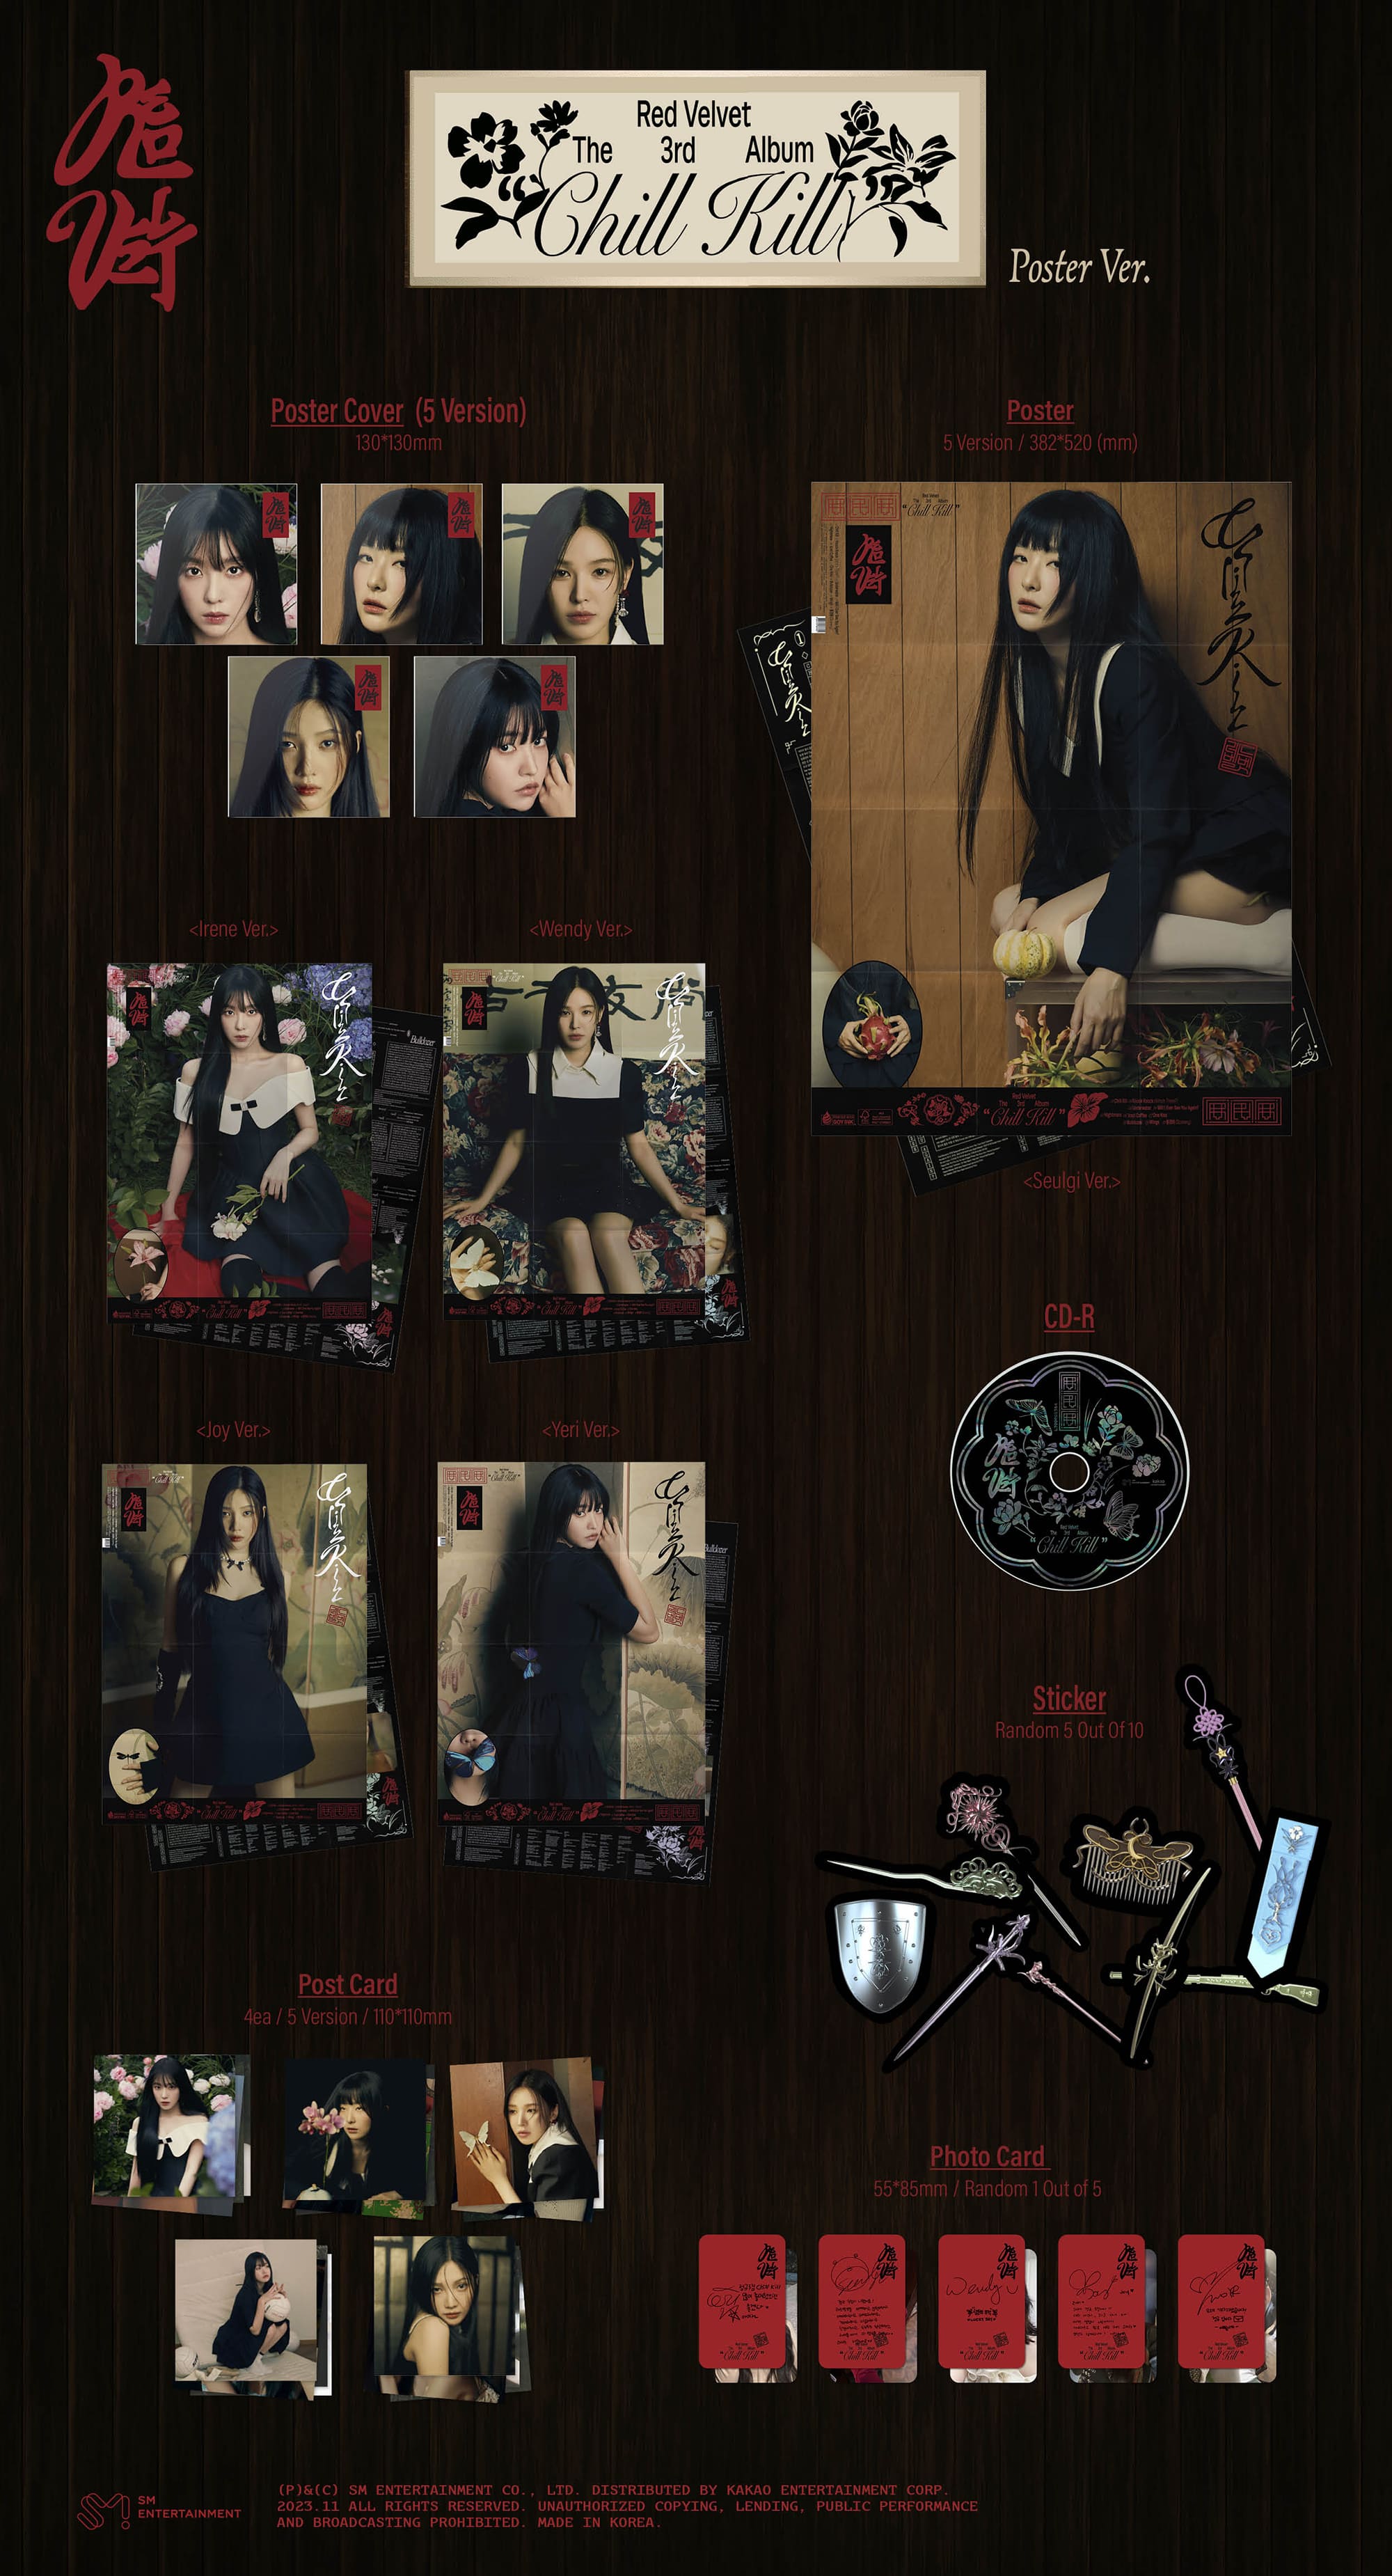 Red Velvet 3rd Full Album Chill Kill (Poster Version)